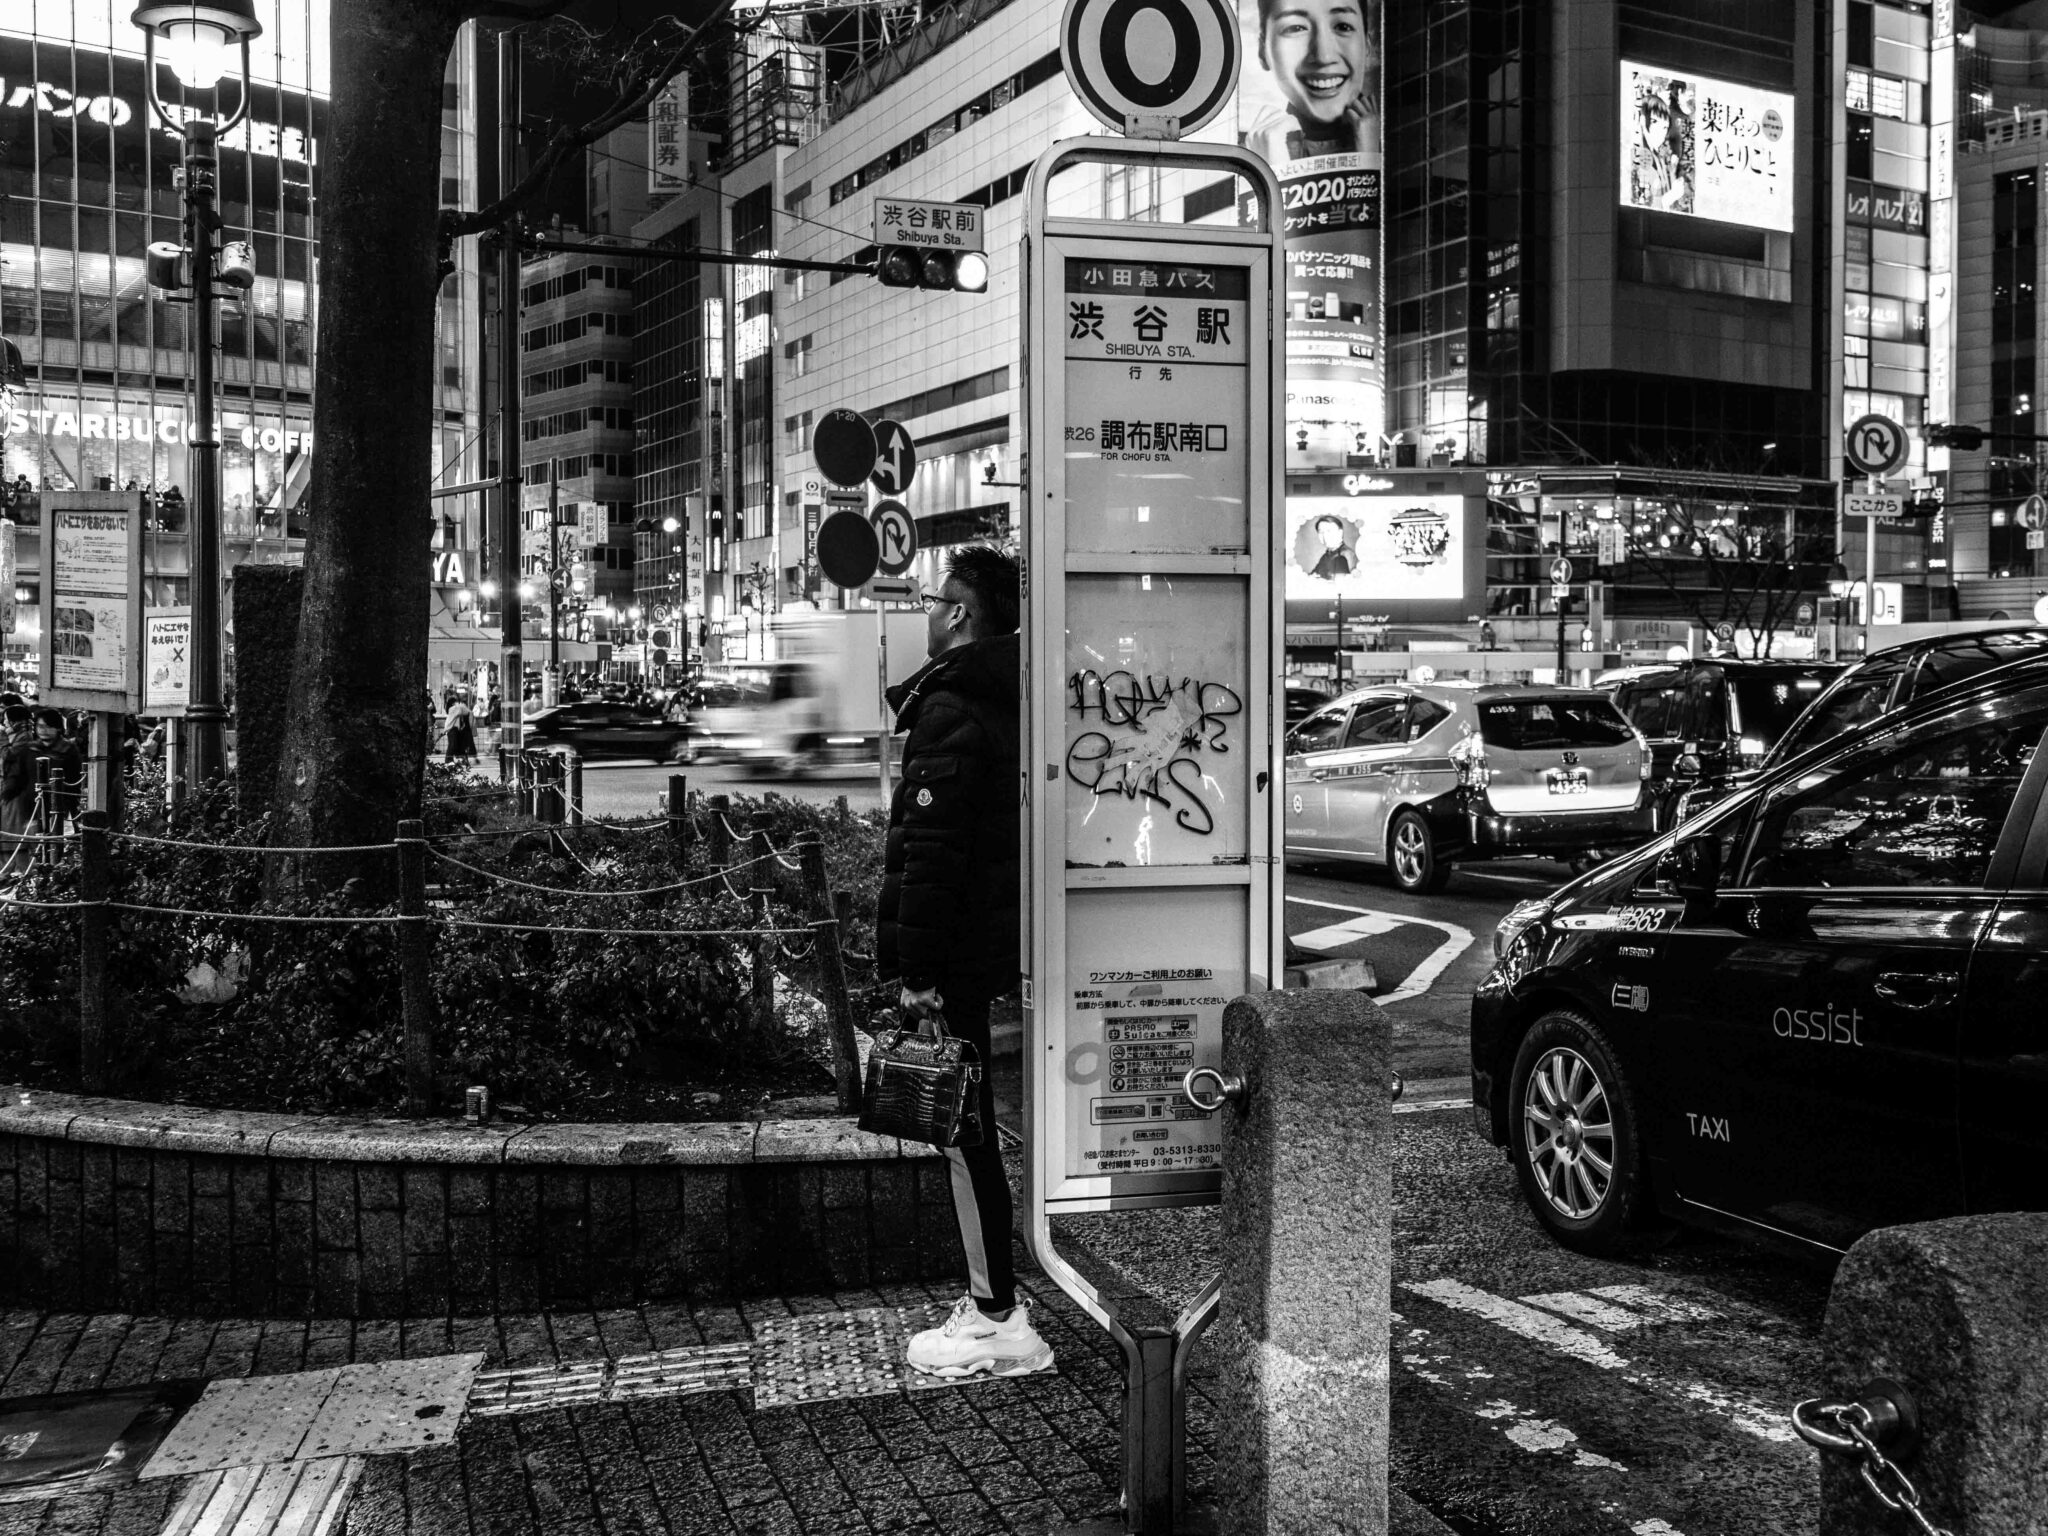 バス停で男が待つ渋谷のグラフィティ